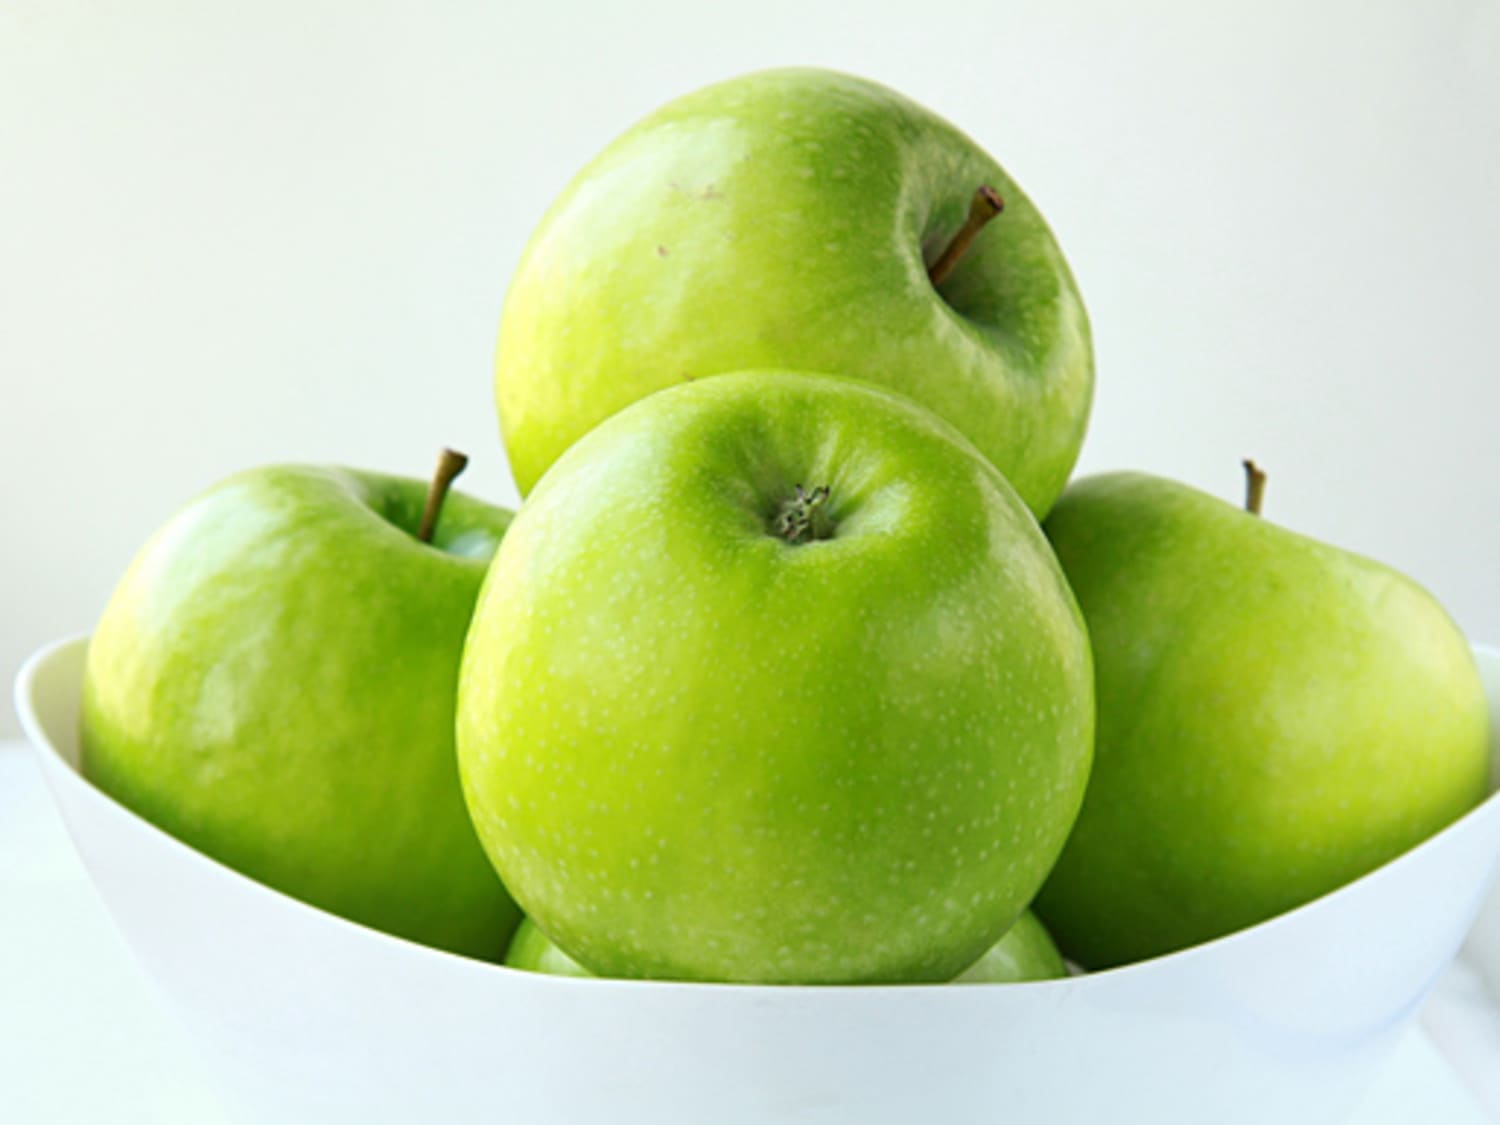  Fresh Granny Smith Apples - Fresh Granny Smith Apples / Fresh  Apples: Grocery & Gourmet Food